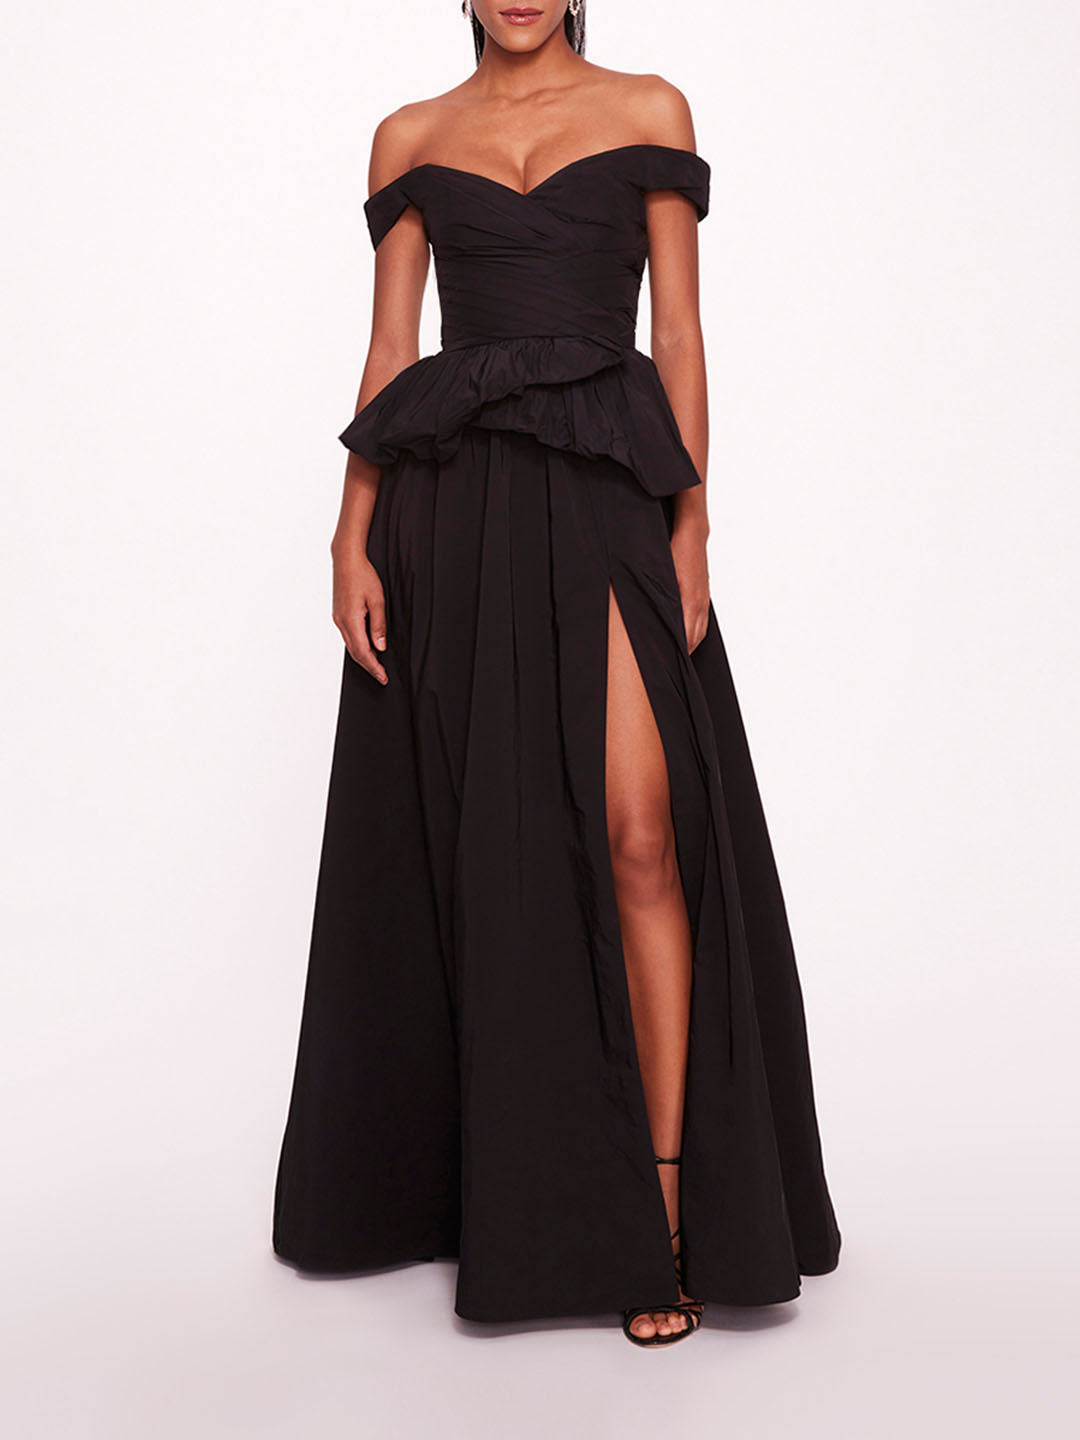 Peplum Mini Dress - Black / Cutout Front / Sleeveless